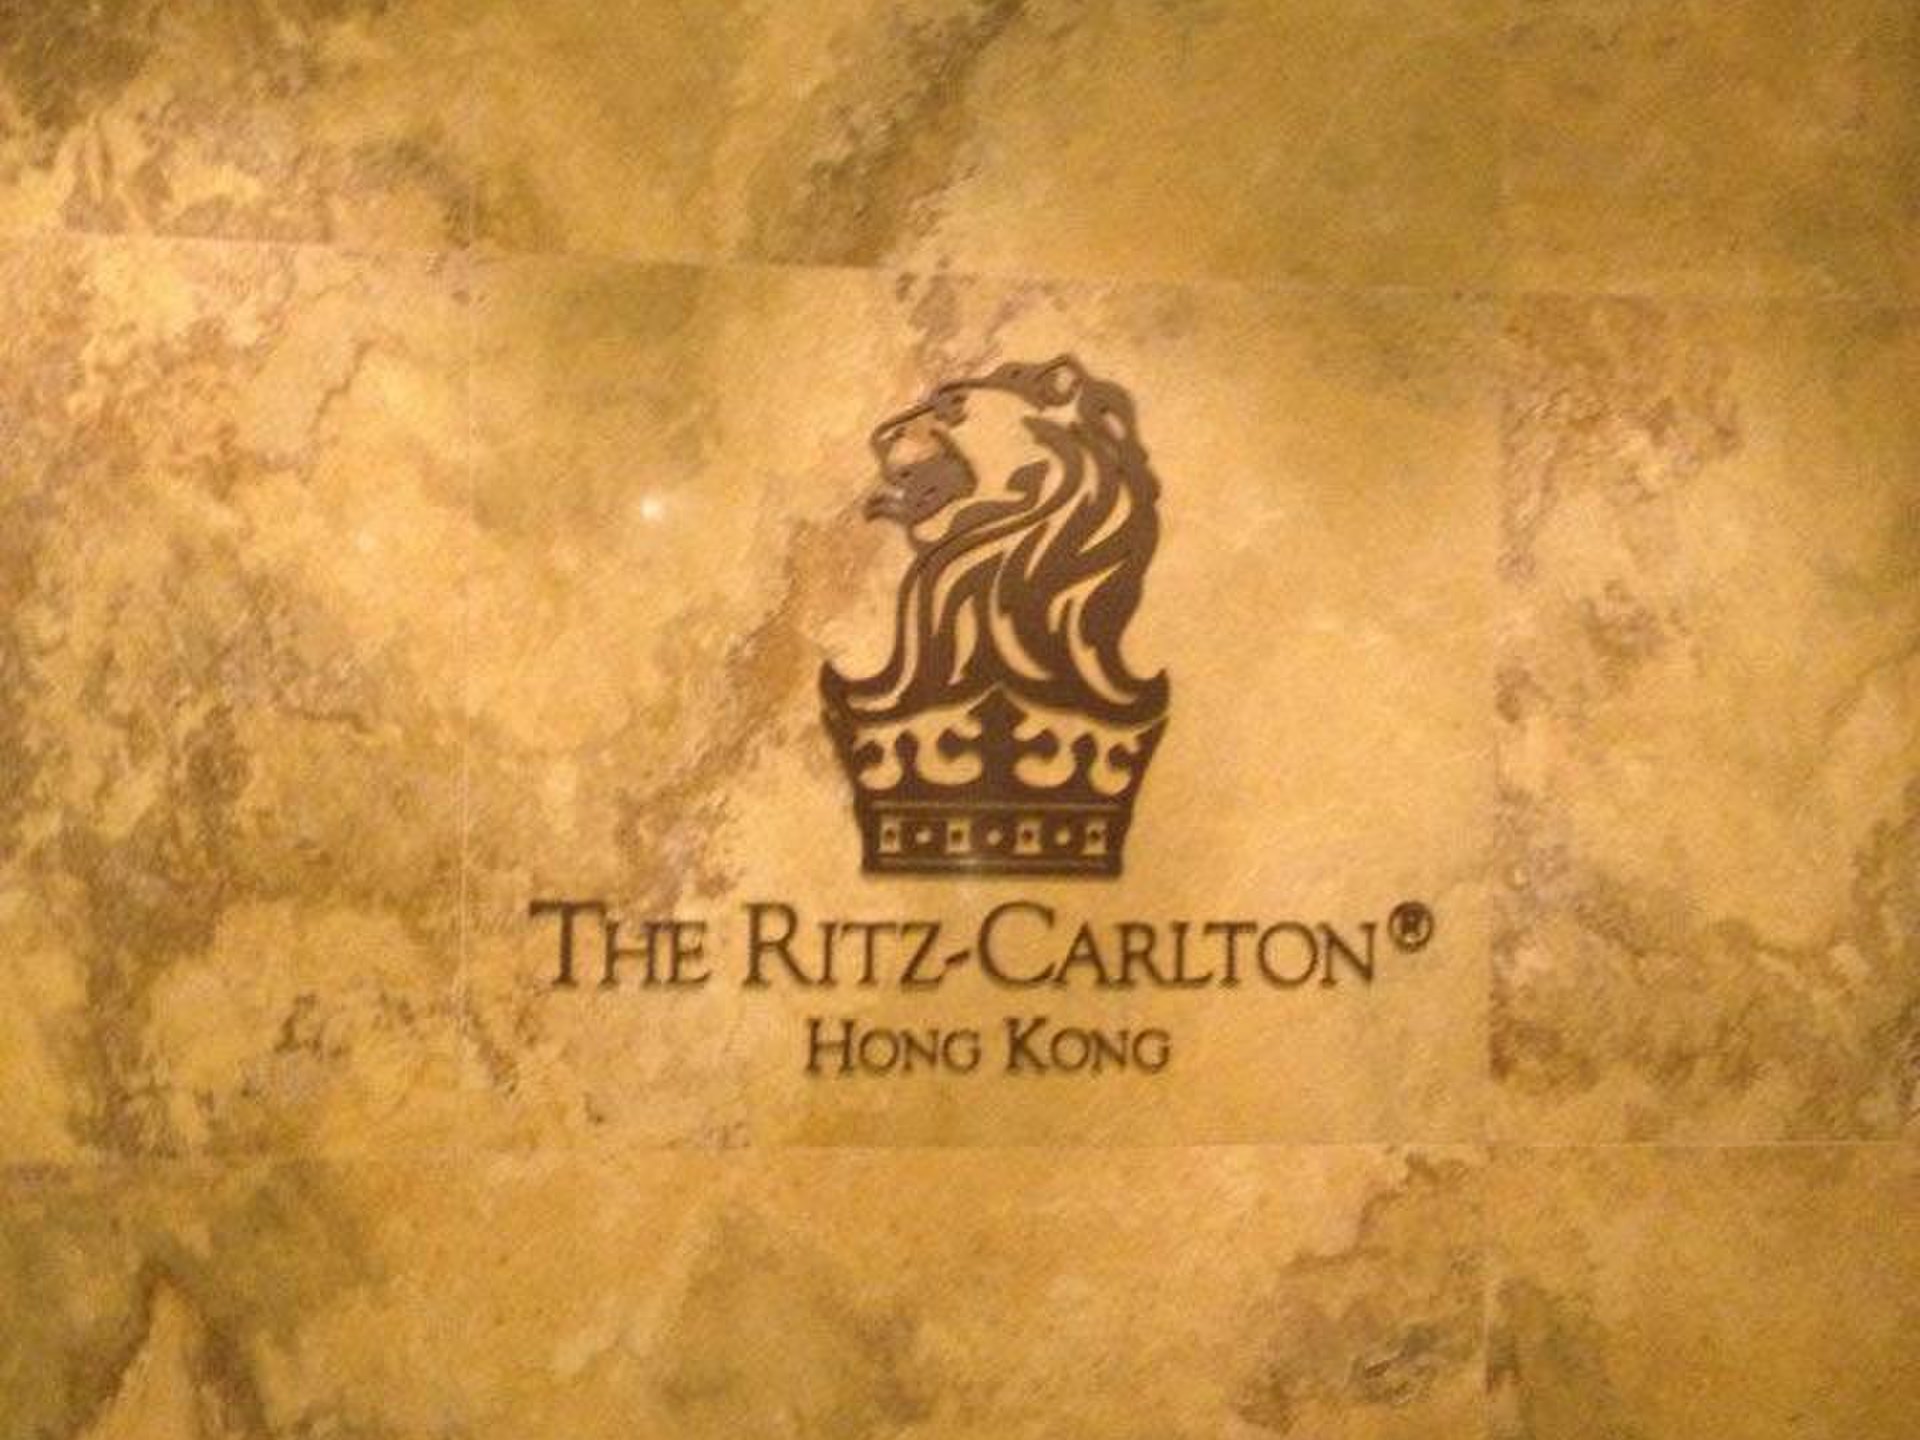 高層過ぎて逆に有り難みがない夜景が広がる香港リッツをはじめとした香港ホテル巡り。